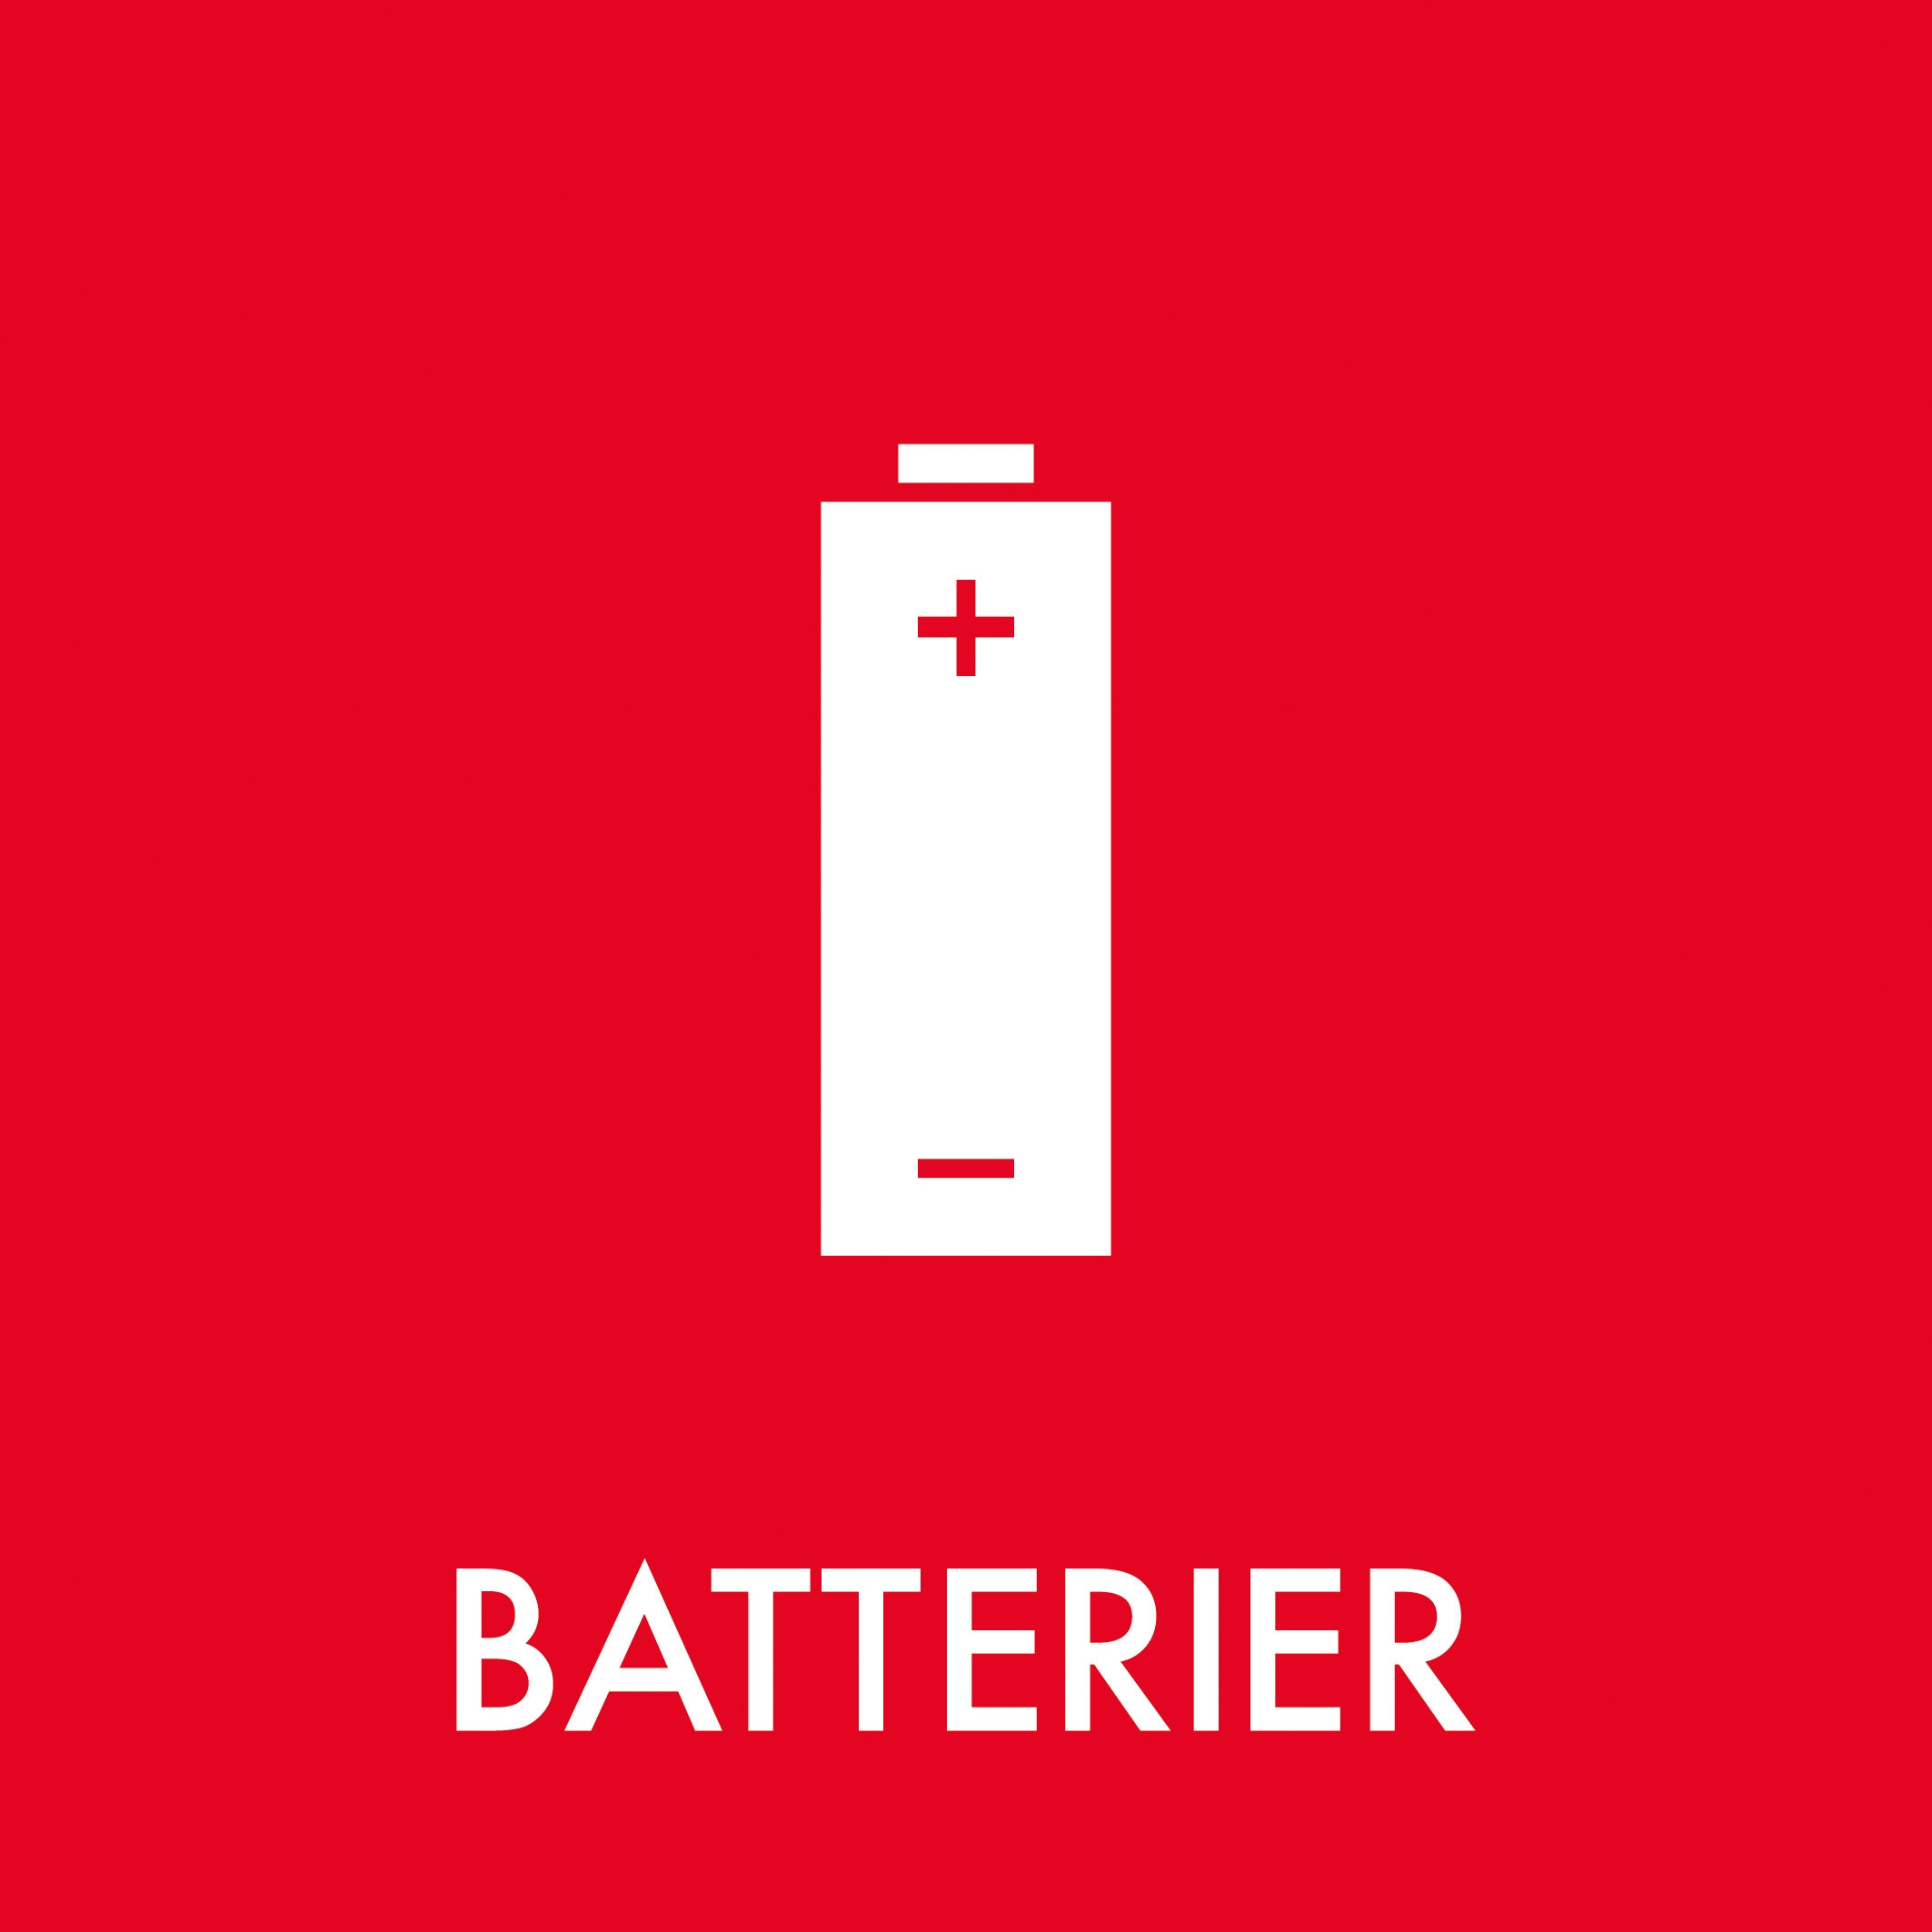 Piktogram Batterier Rød 12 x 12 cm Selvklæbende, blank, runde hjørner